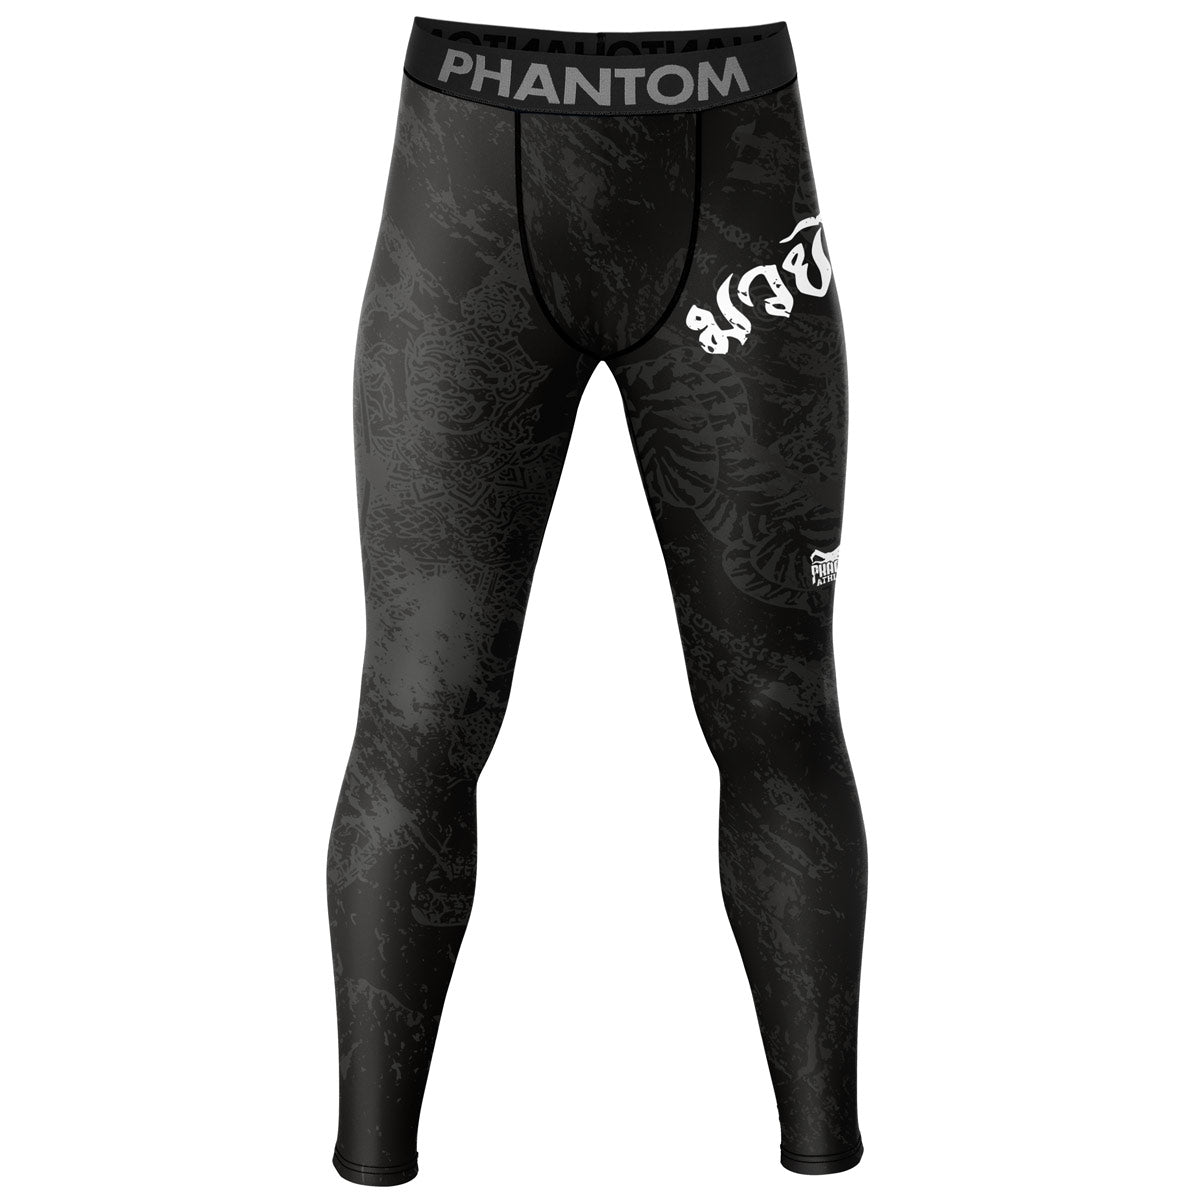 Phantom kompresné pančuchové nohavice v dizajne Muay Thai pre tréning a súťaženie bojových umení. Obsahuje thajský dizajn a grafiku Sak Yant.